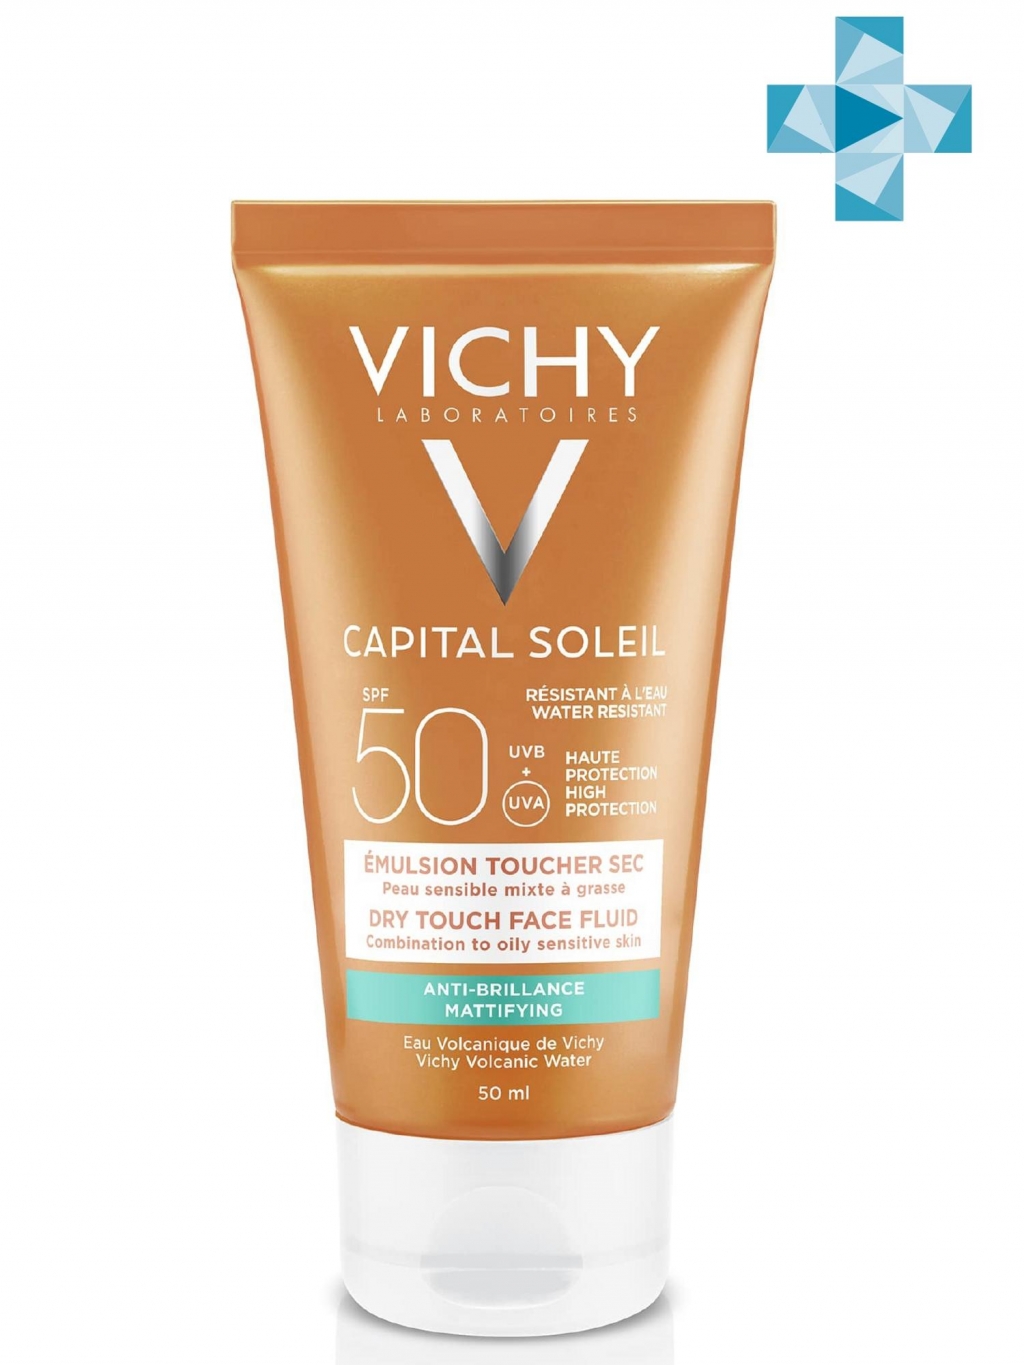 Vichy Матирующая эмульсия для жирной кожи SPF 50, 50 мл (Vichy, Capital Ideal Soleil) от Socolor